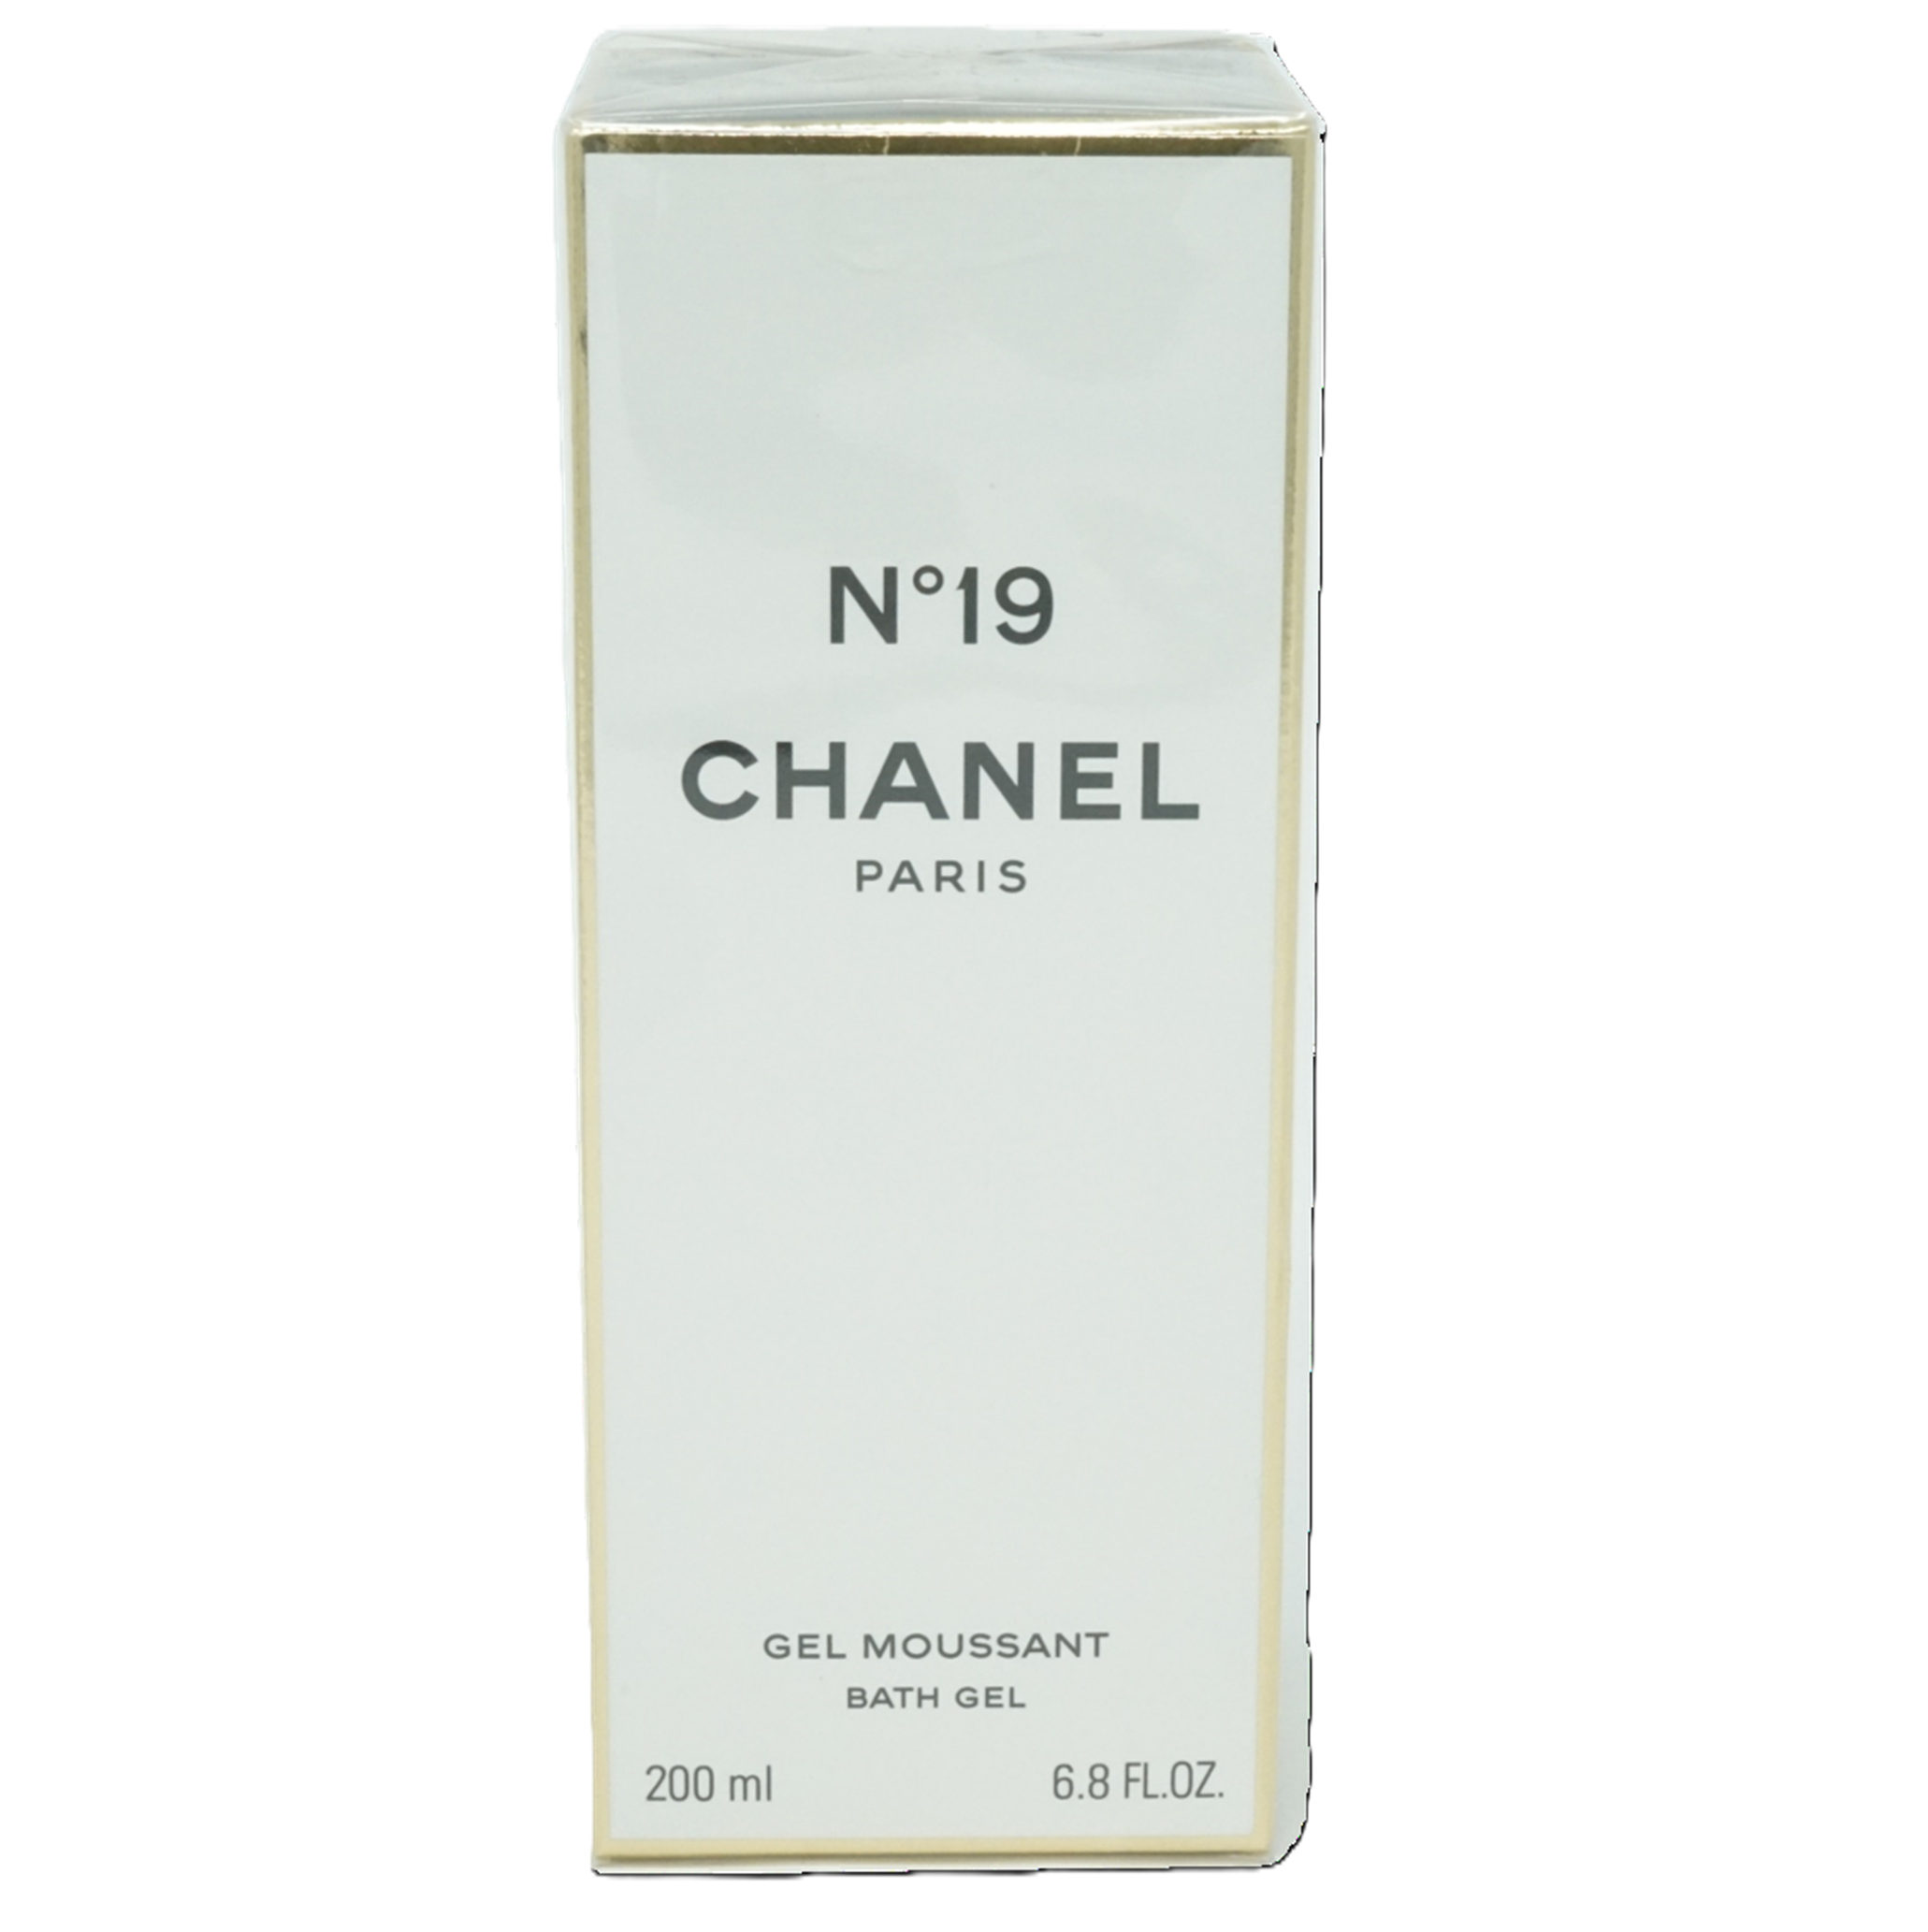 Chanel No 19 Bath Gel 200 ml